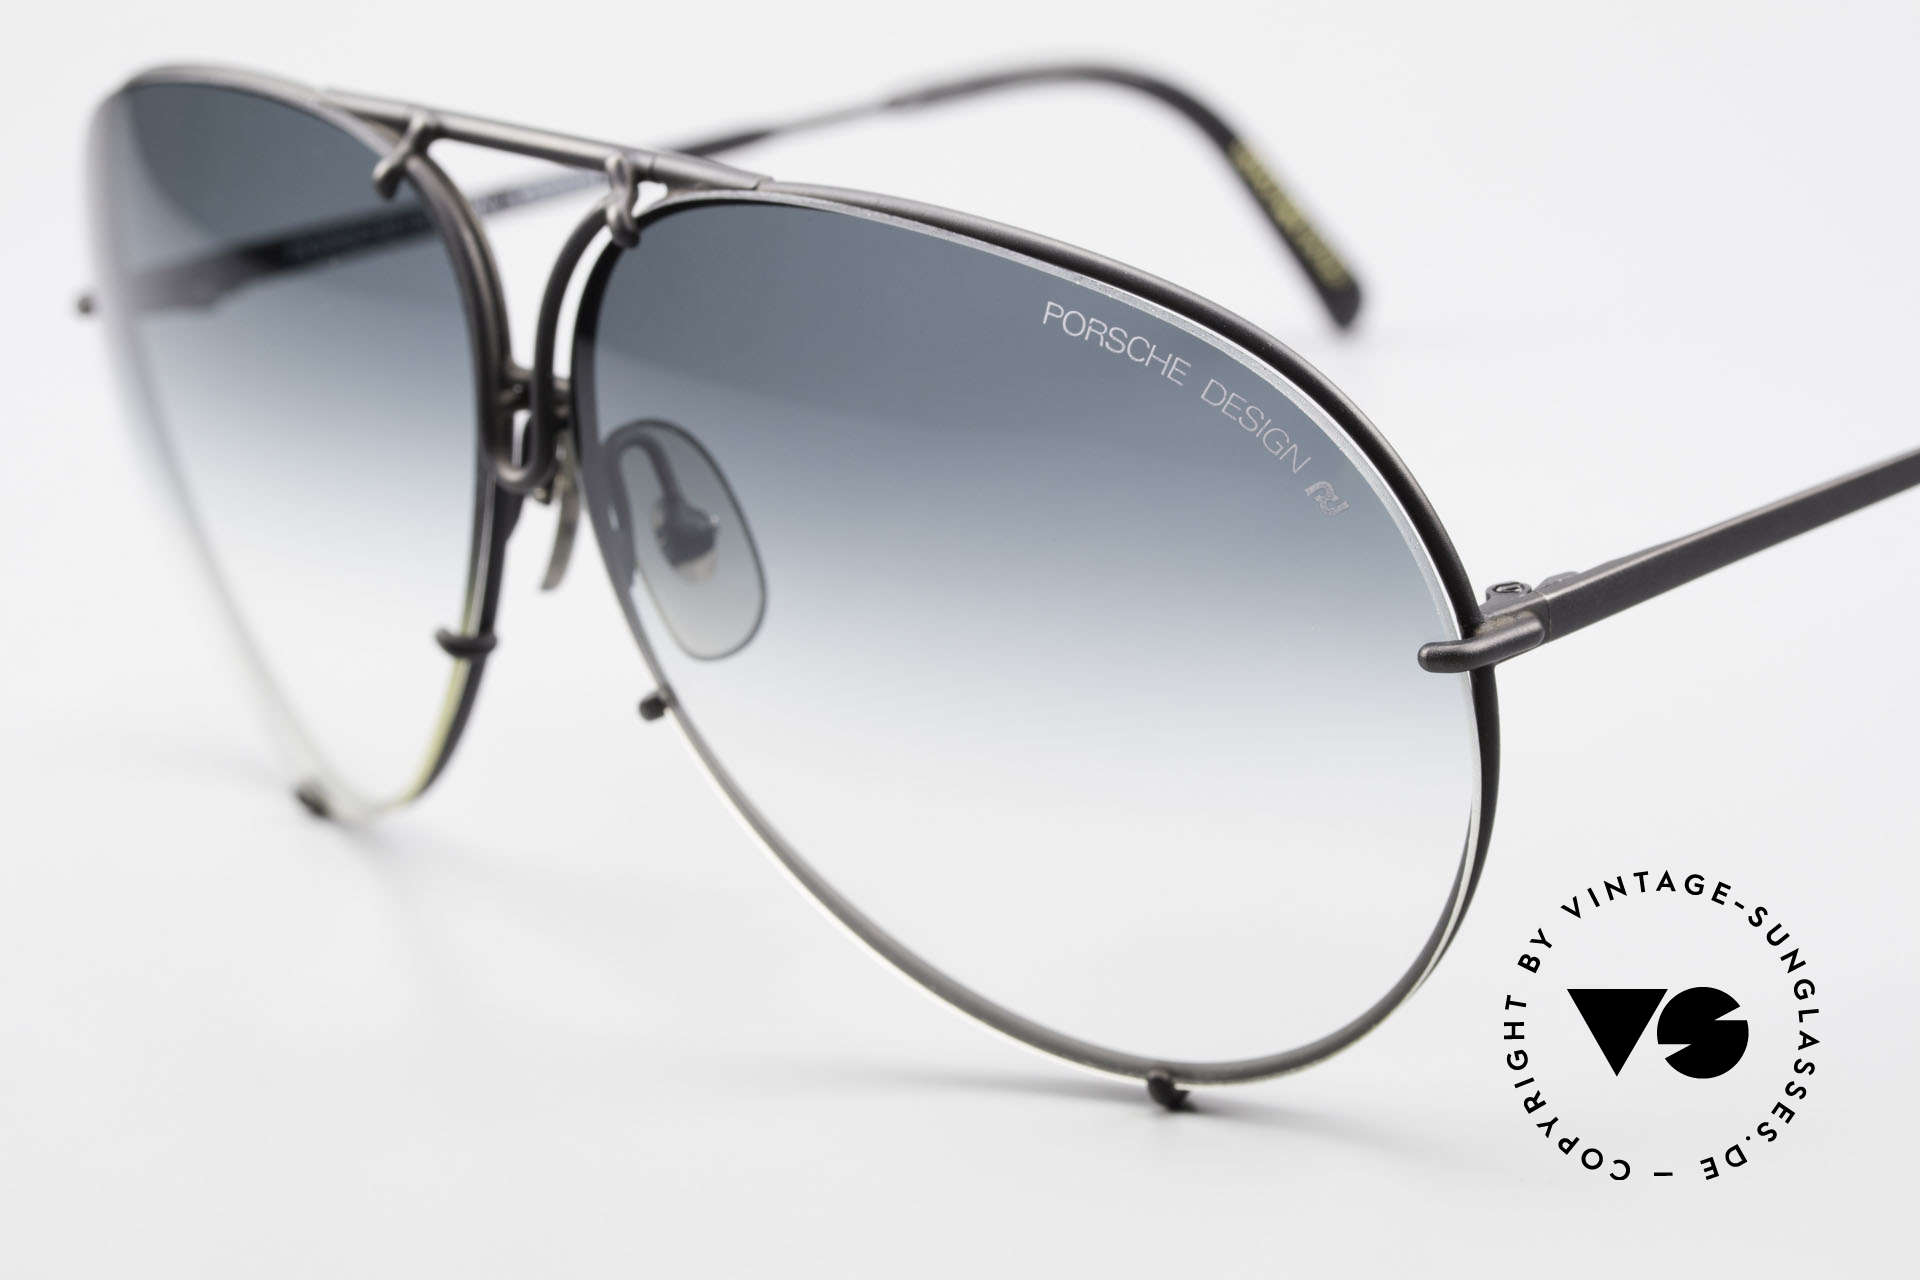 Porsche 5621 Rare 80's Aviator Sunglasses, legendary 80's bestseller sunglasses; vintage rarity!, Made for Men